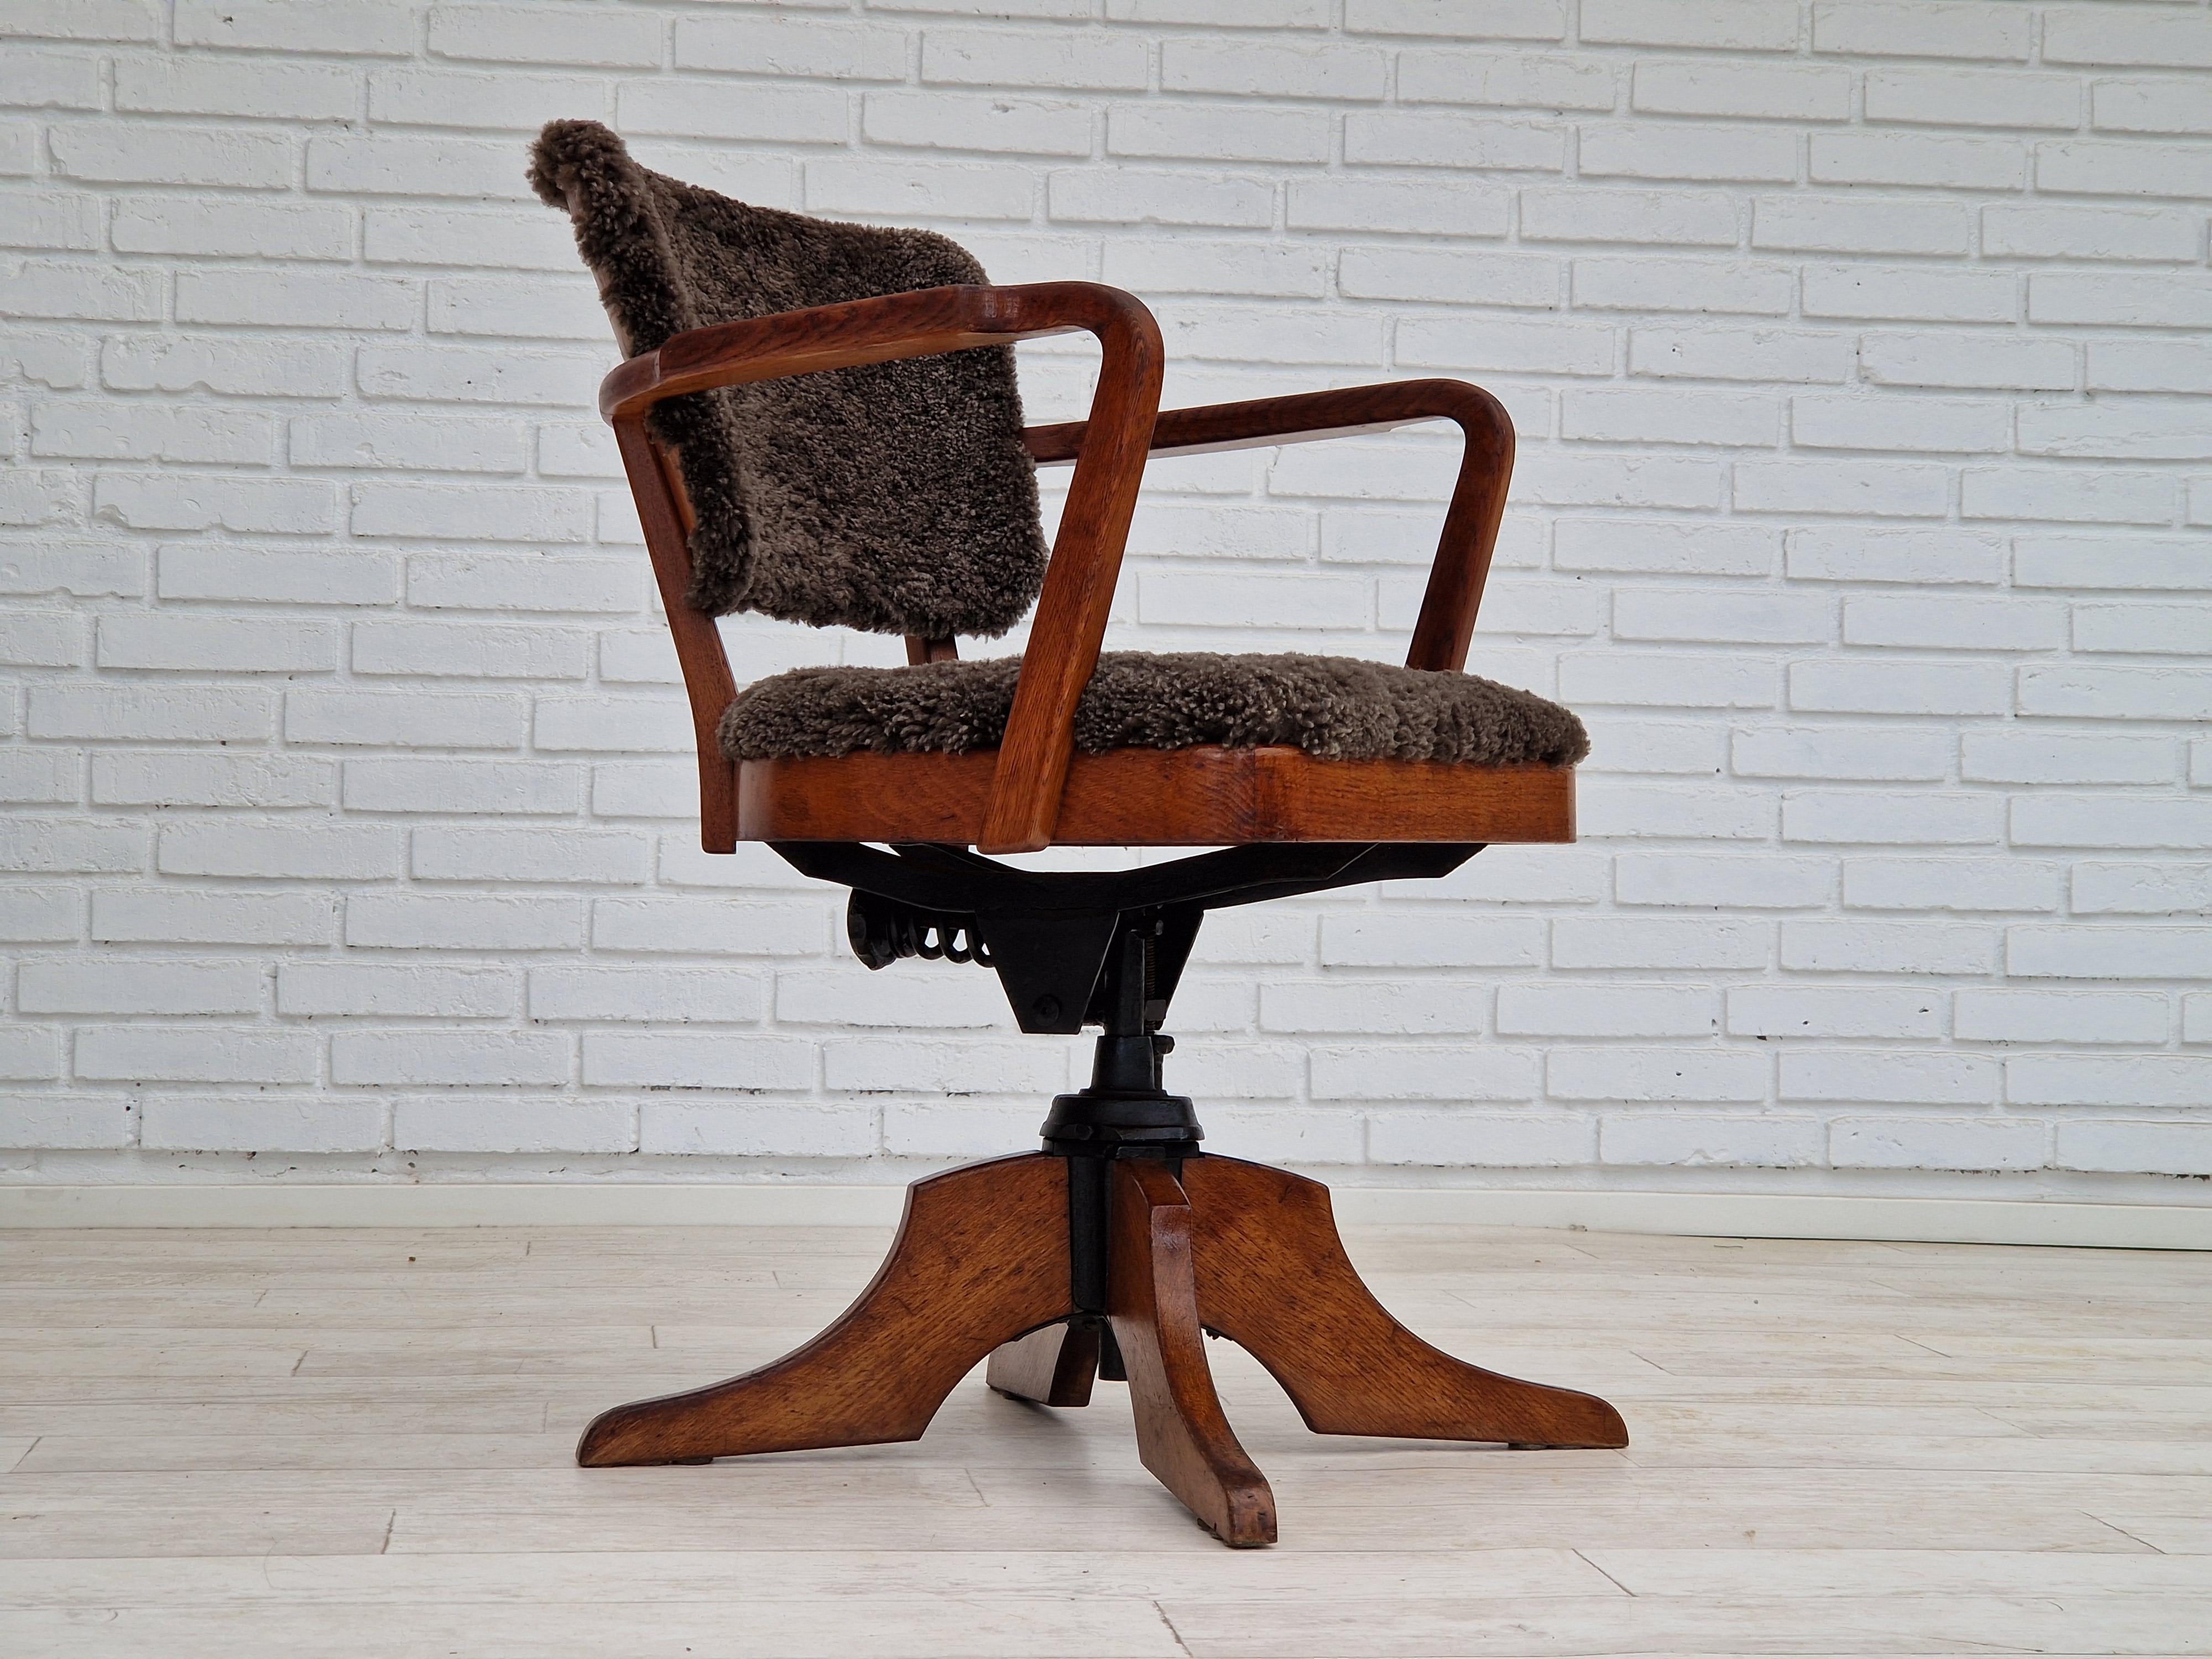 Années 1940, design danois, fauteuil pivotant Ehapa avec fonction d'inclinaison. Rembourré en peau d'agneau charocal/brun de qualité néo-zélandaise. Bois de chêne renouvelé. Restauré par un tapissier professionnel, artisan.